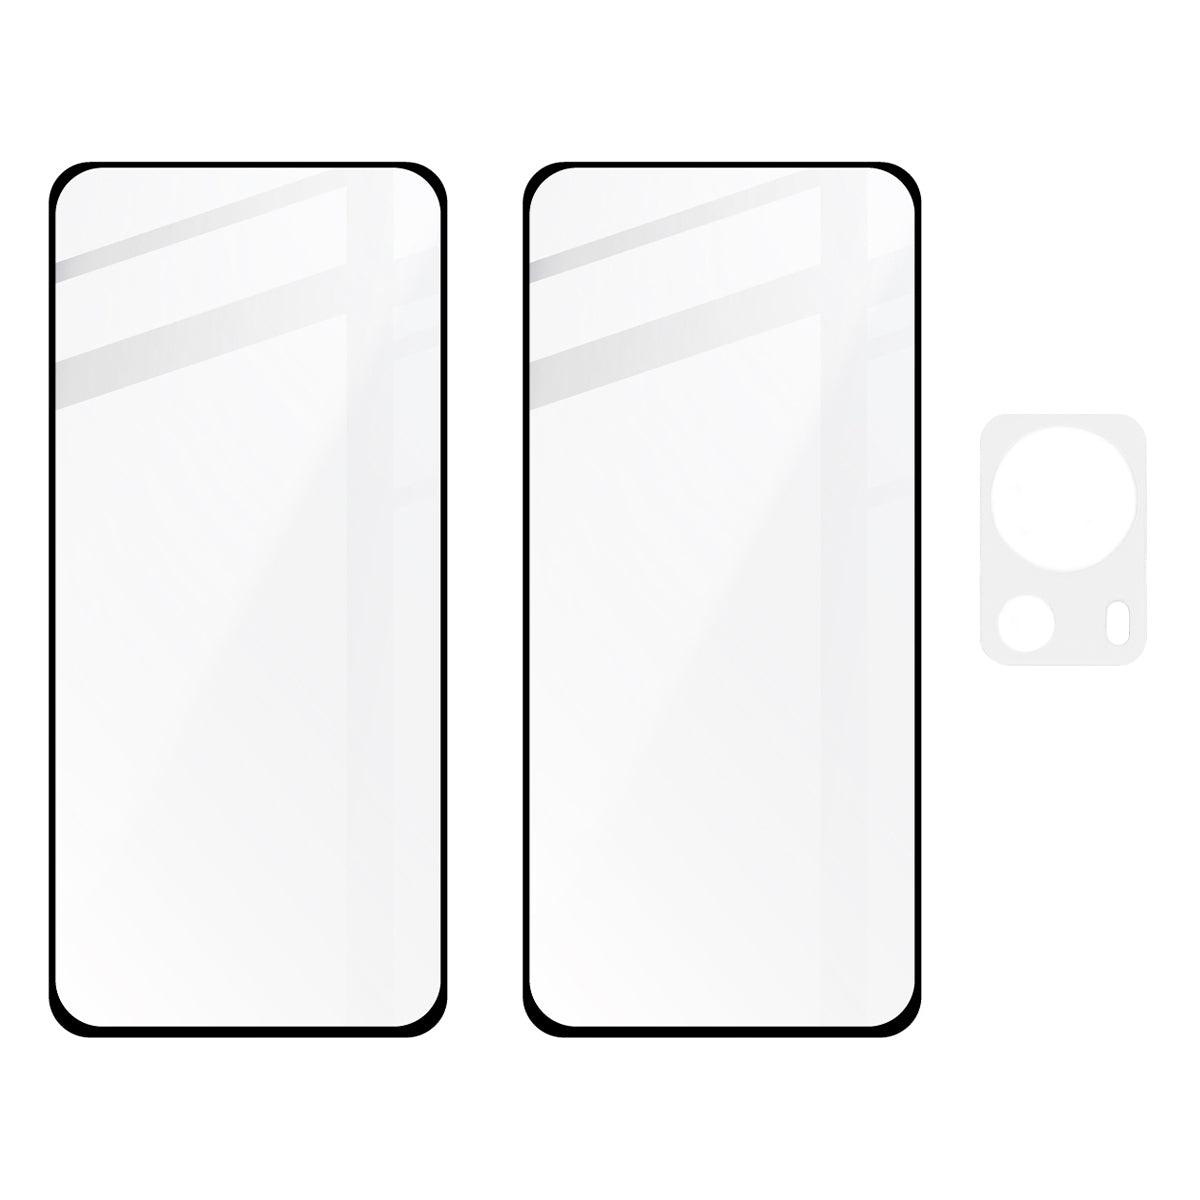 Gehärtetes Glas Bizon Glass Edge 3D - 2 Stück + Kameraschutz für Xiaomi 13 Lite, Schwarz